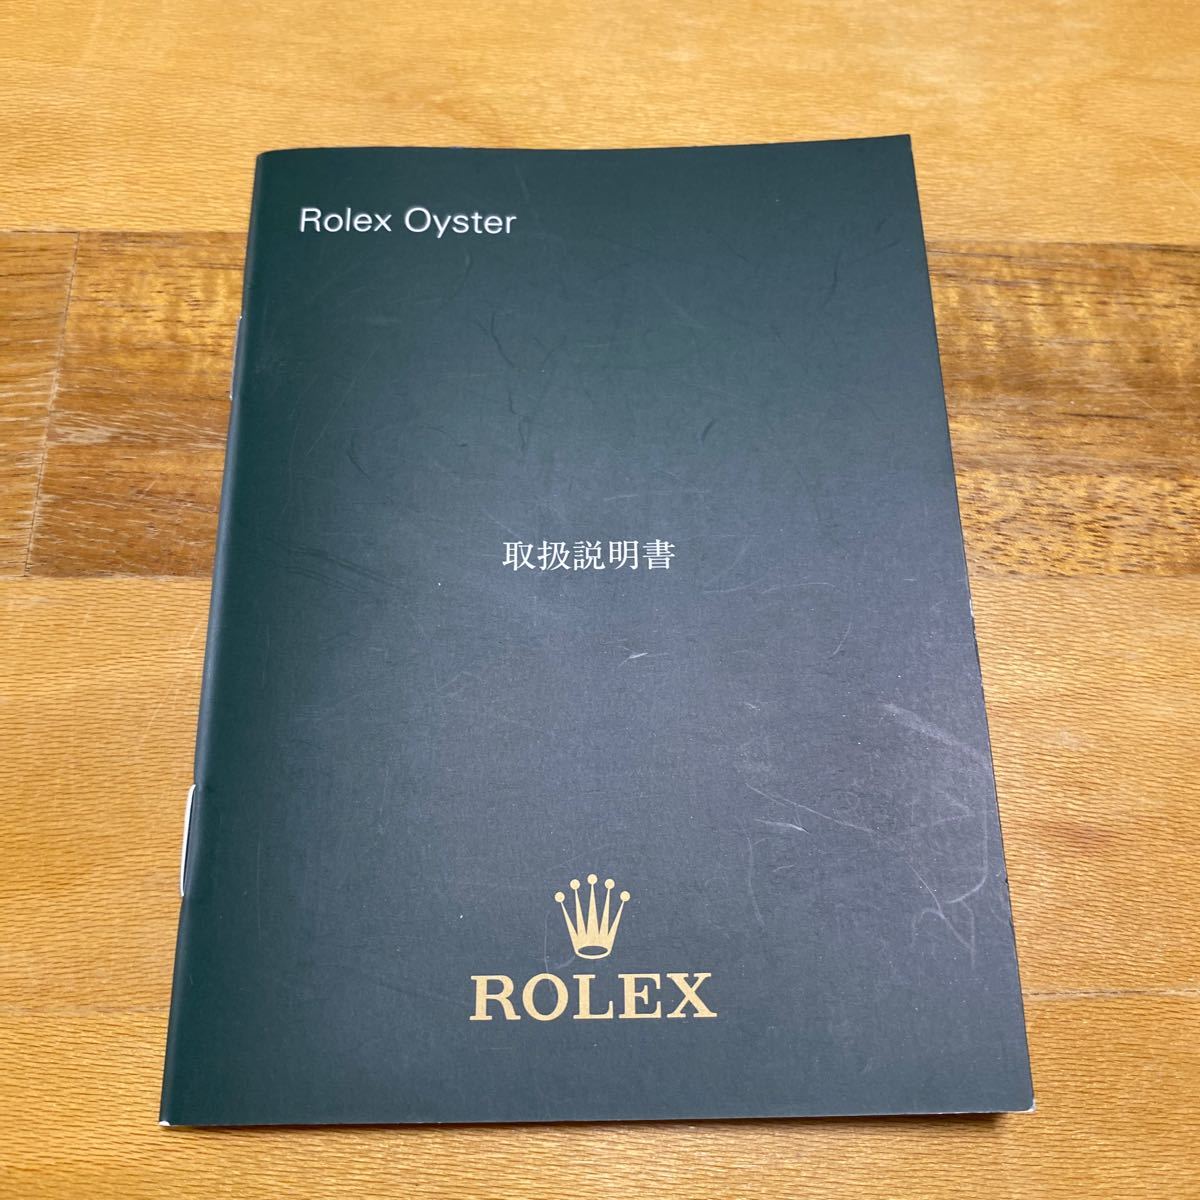 3504【希少必見】ロレックス オイスター冊子 Rolex oyster 定形郵便94円可能_画像1